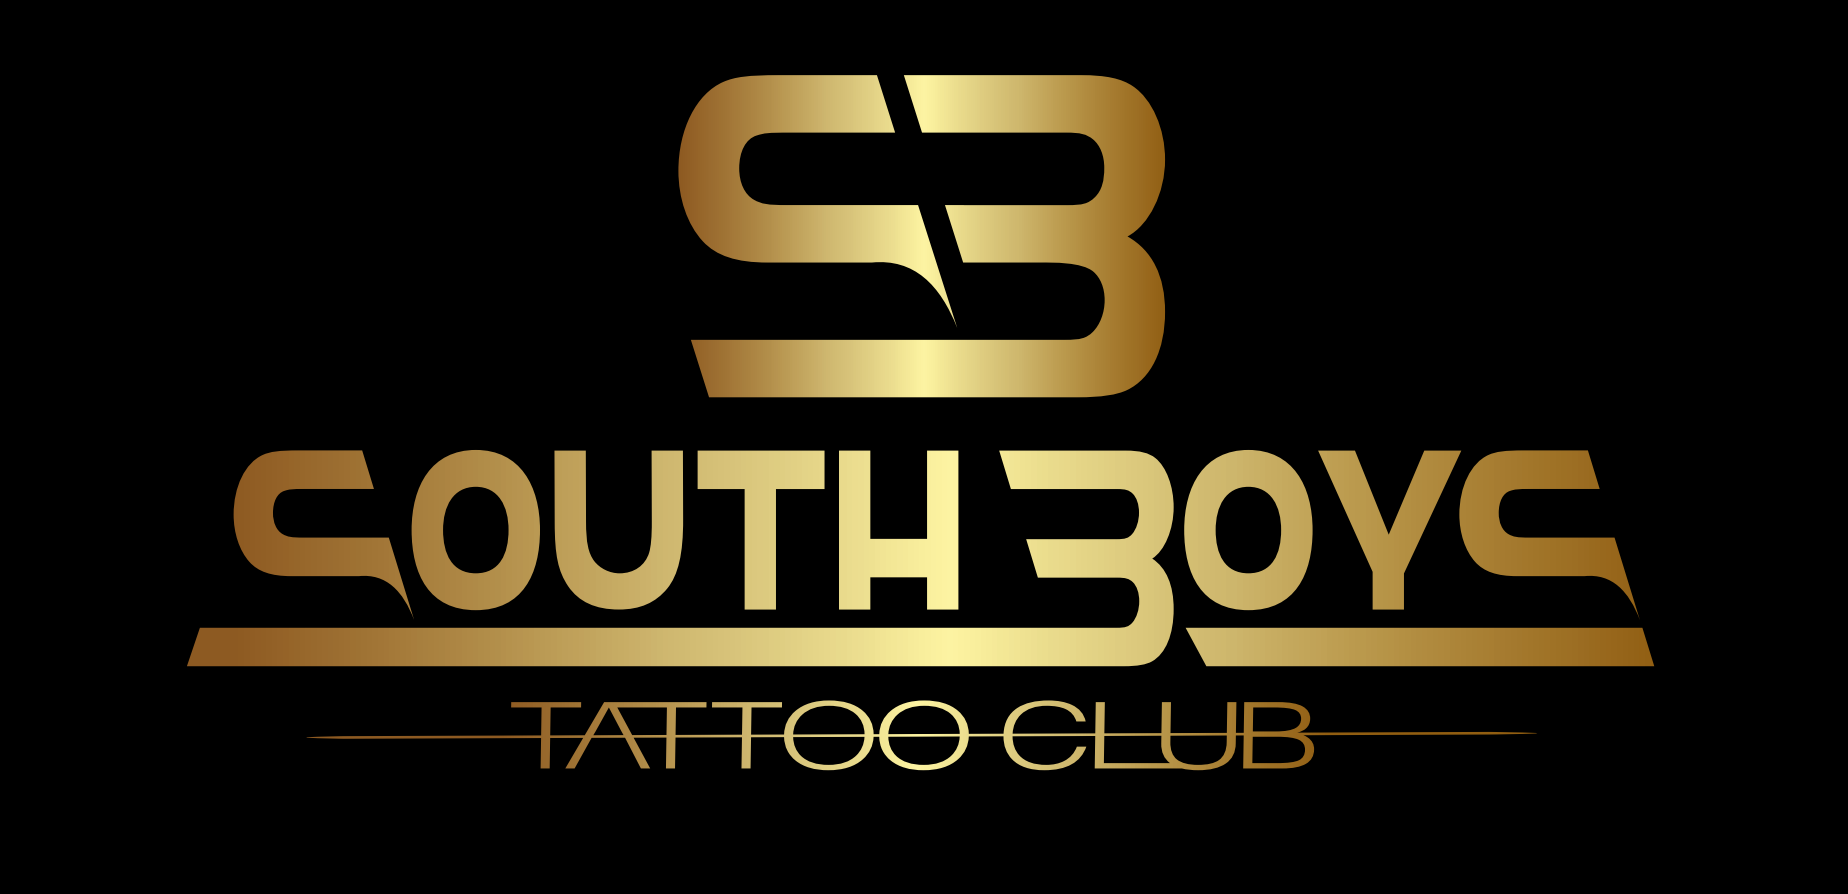 Ver detalles de la Empresa South boys tattoo club